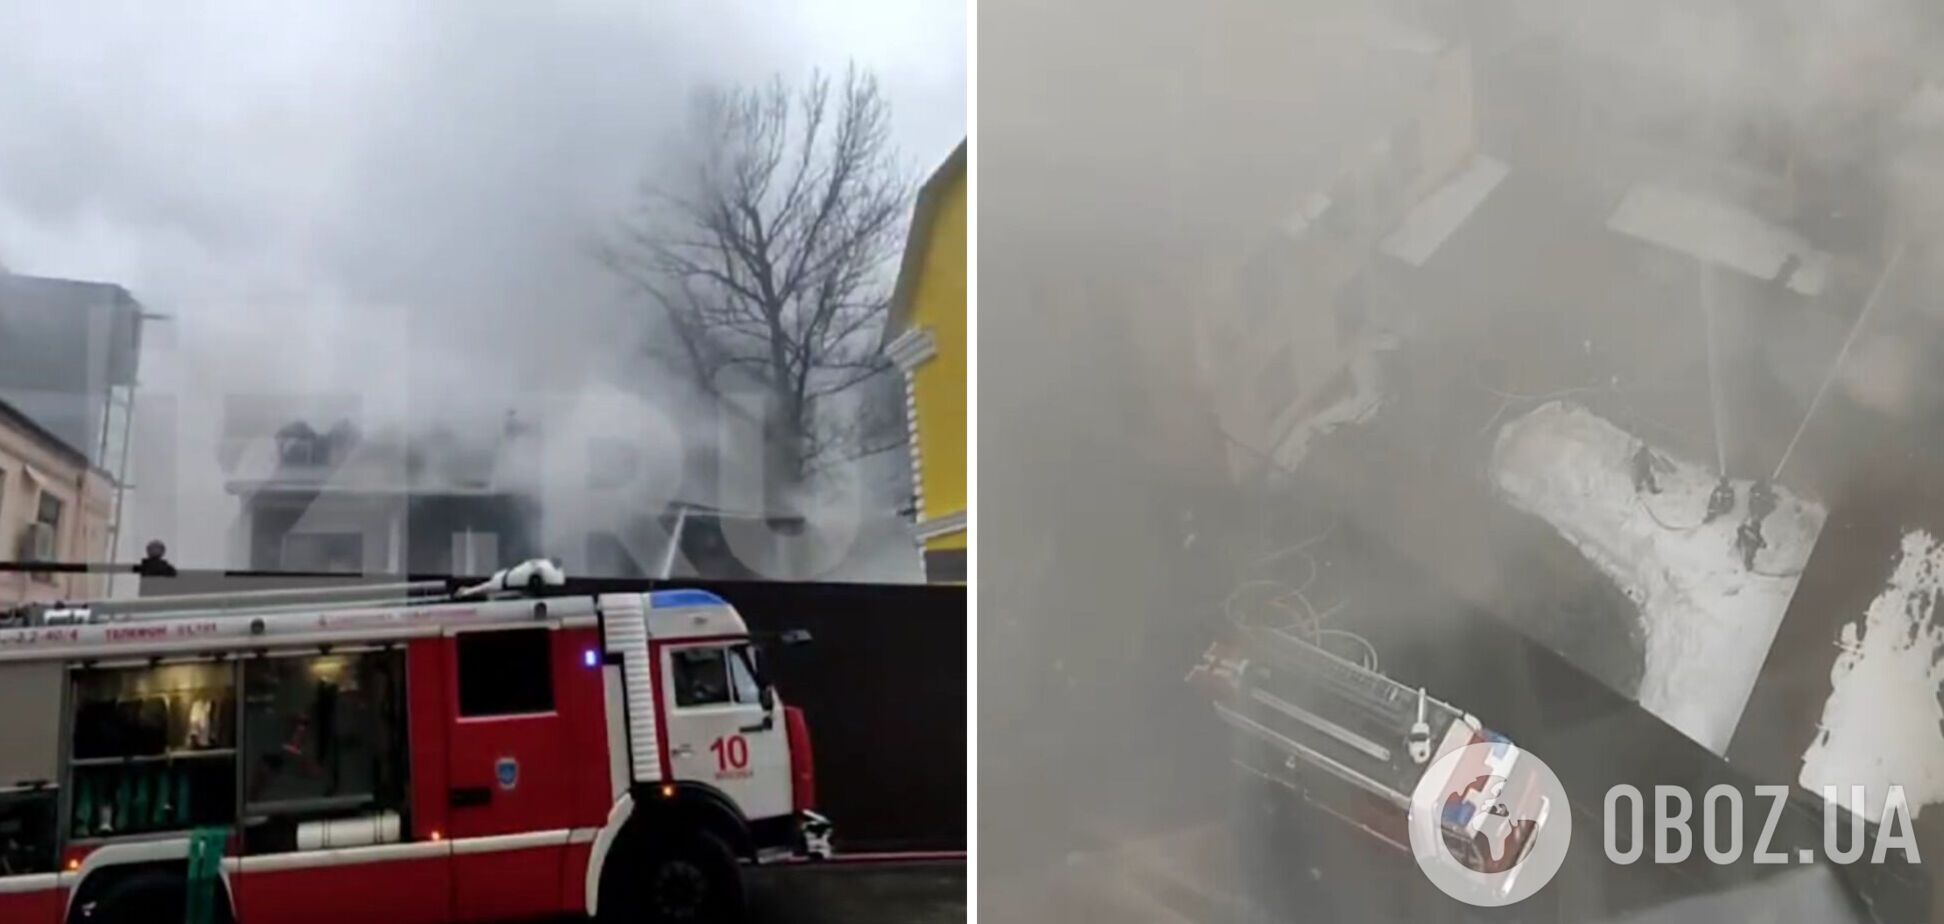 В центре Москвы в первый день нового года загорелся ресторан 'Тарас Бульба': все вокруг затянуло дымом. Видео